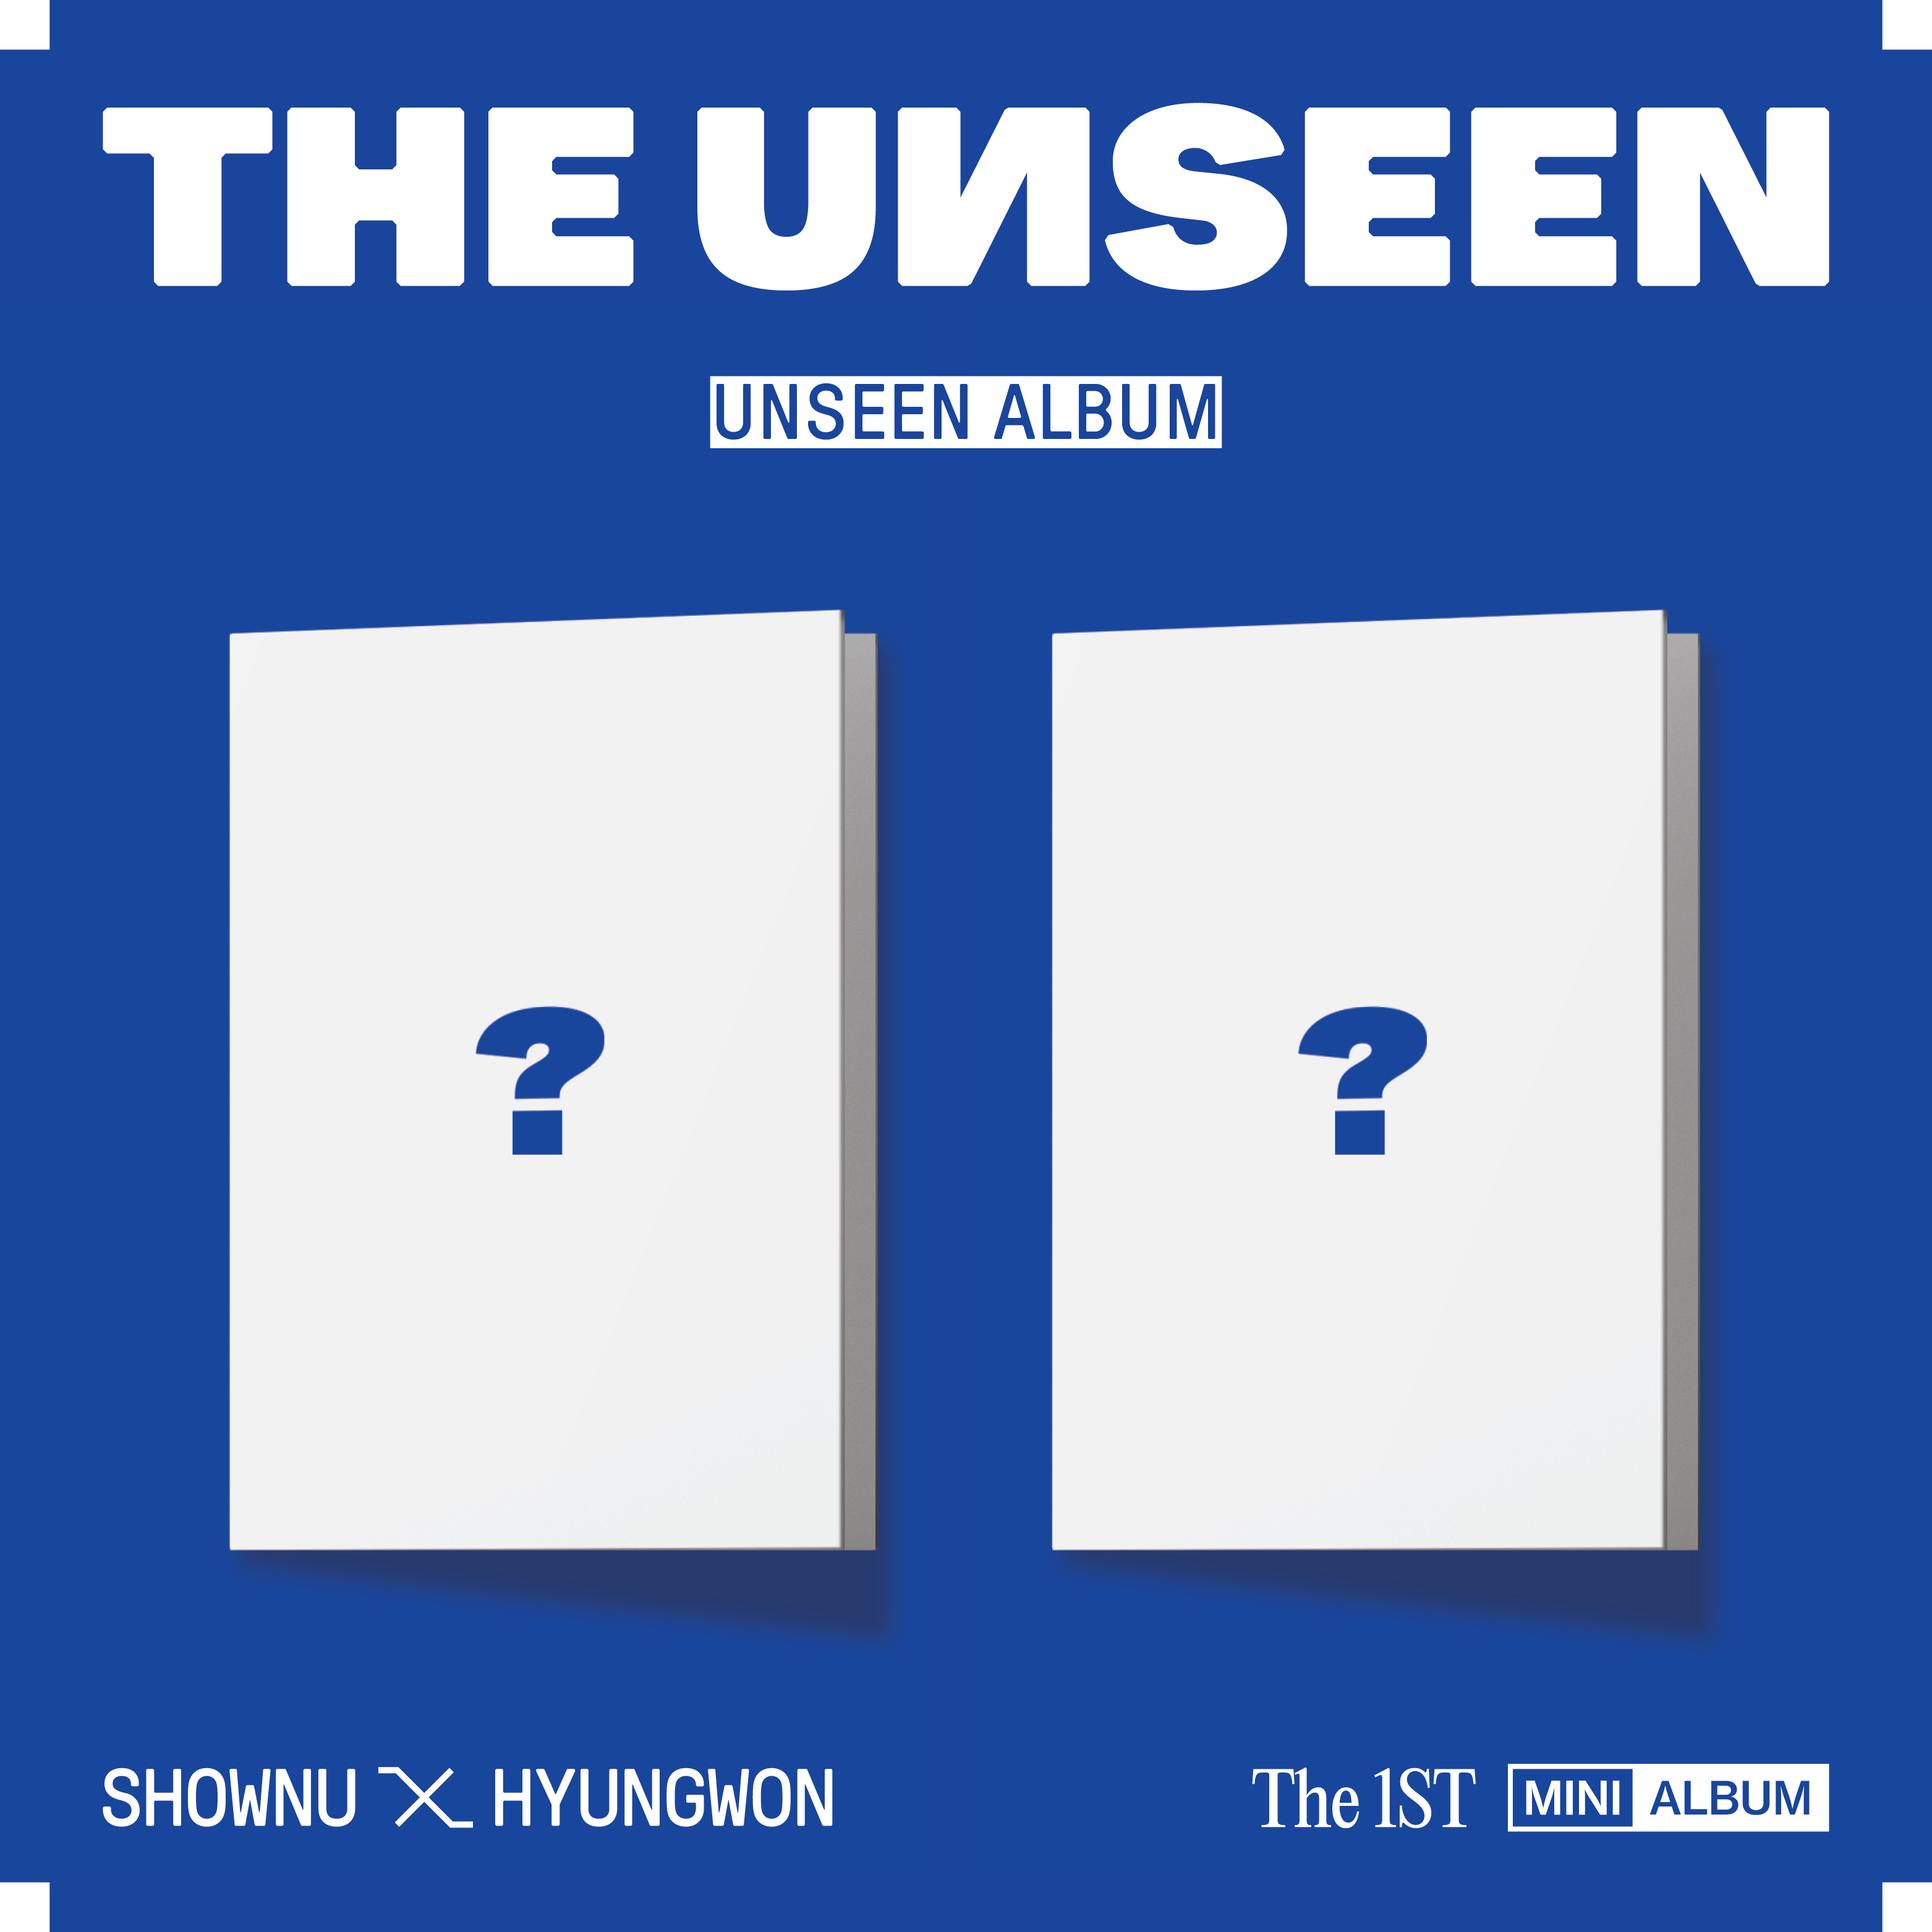 셔누 X 형원 (SHOWNU X HYUNGWON) - 미니앨범 1집 [THE UNSEEN] (UNSEEN ALBUM) (UNSEEN Ver.) (한정반)